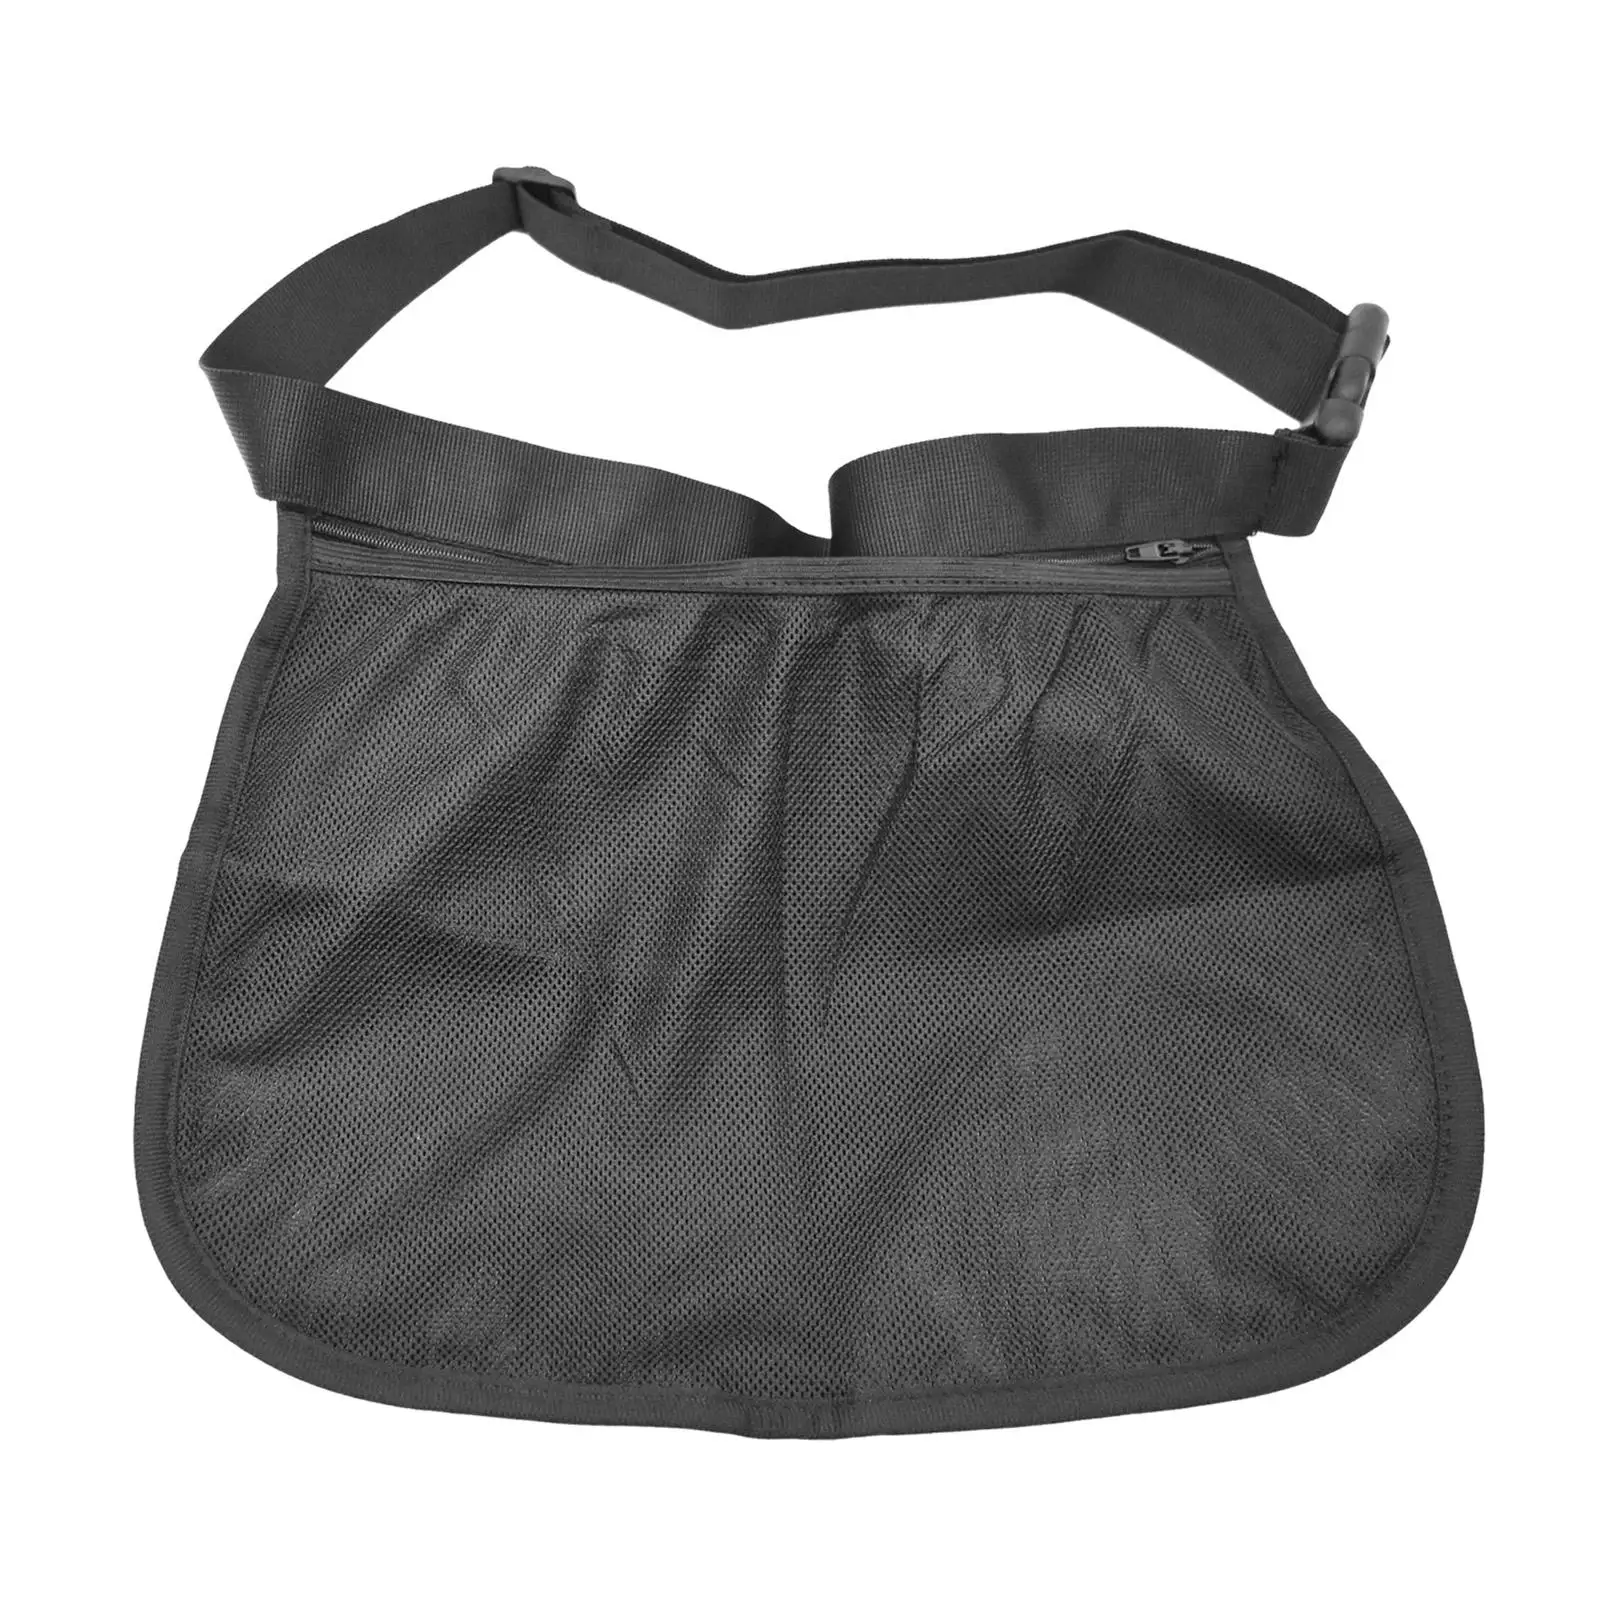 Tennis Ball Holder Table Tennis Ball Holder Bag Mesh Storage Bag for Fitness Exercise Workout Women Men Storing Balls and Phones